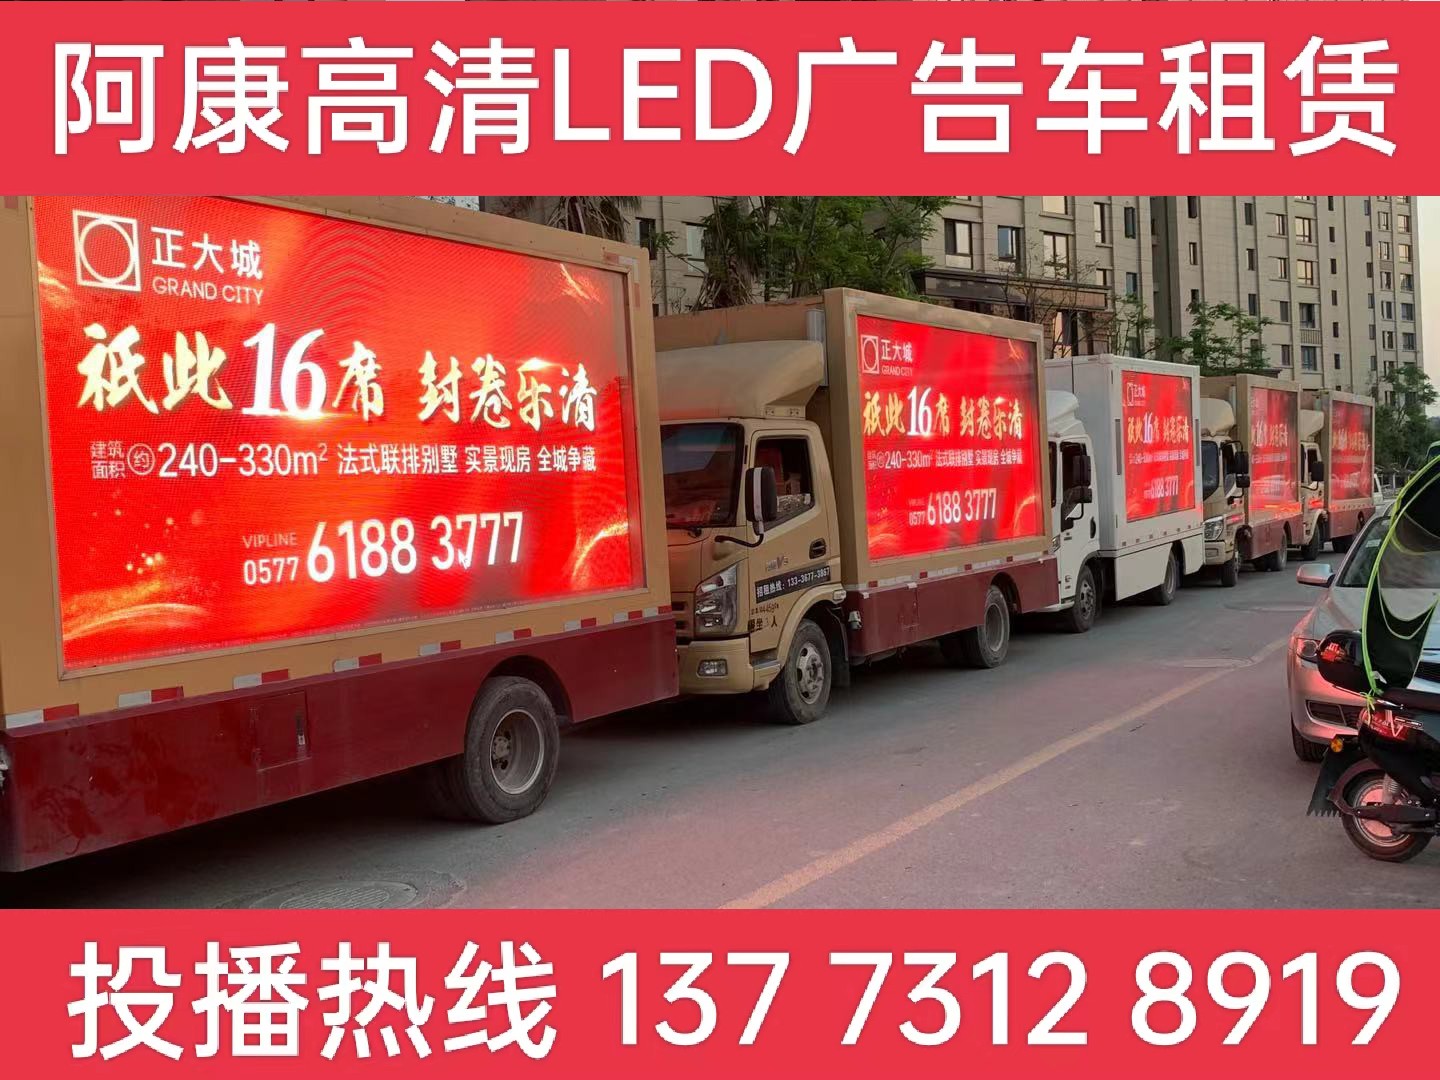 沭阳县LED广告车出租